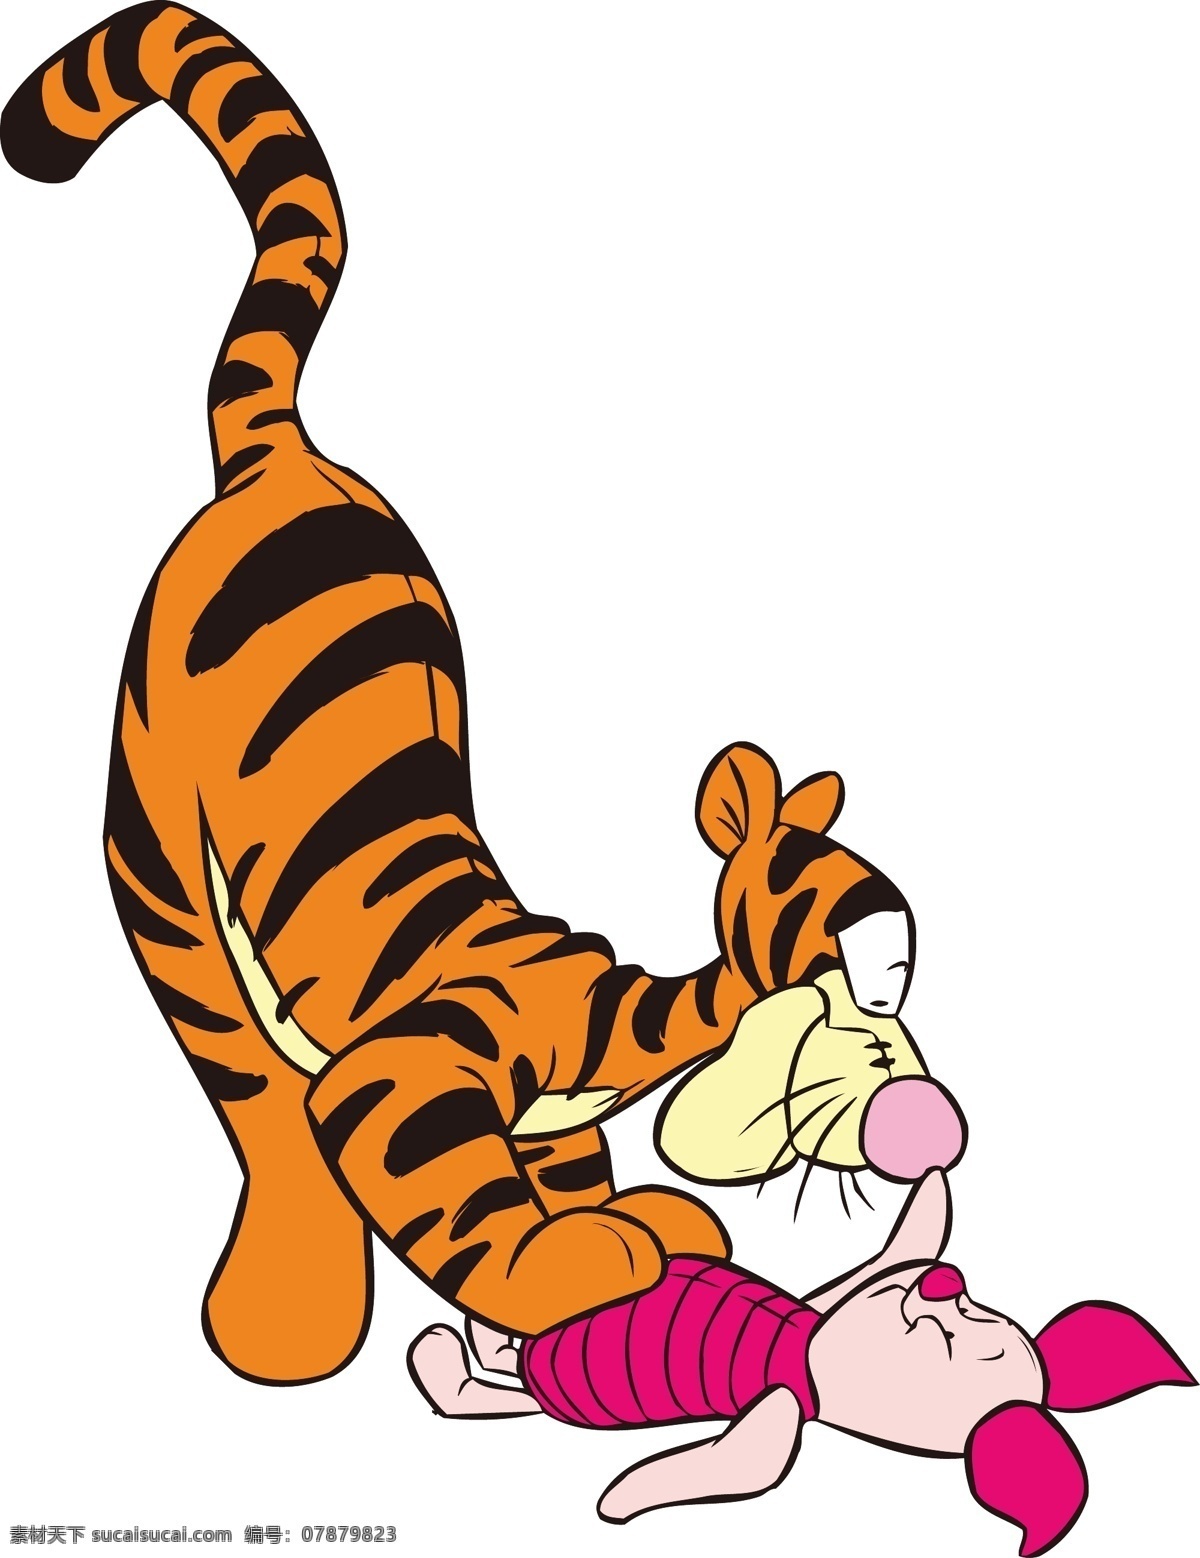 迪士尼维尼熊 迪士尼 玛丽猫 玩具总动员 星际宝贝 小松鼠 米妮 米奇 卡通 米老鼠 维尼熊 跳跳虎 小猪 动漫人物 动漫动画